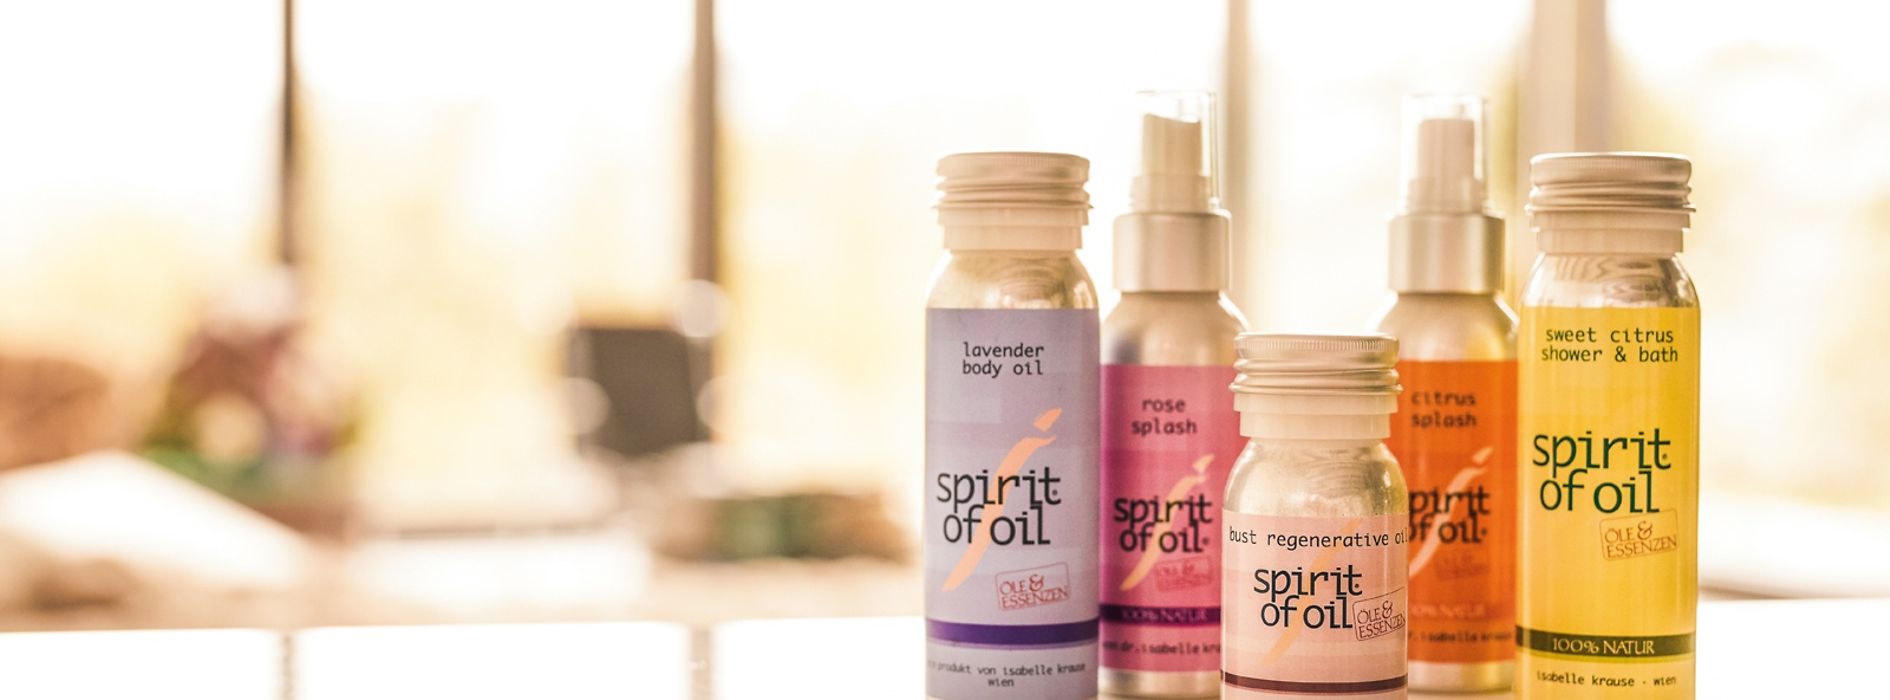 spirit of oil, productos para el cuidado corporal